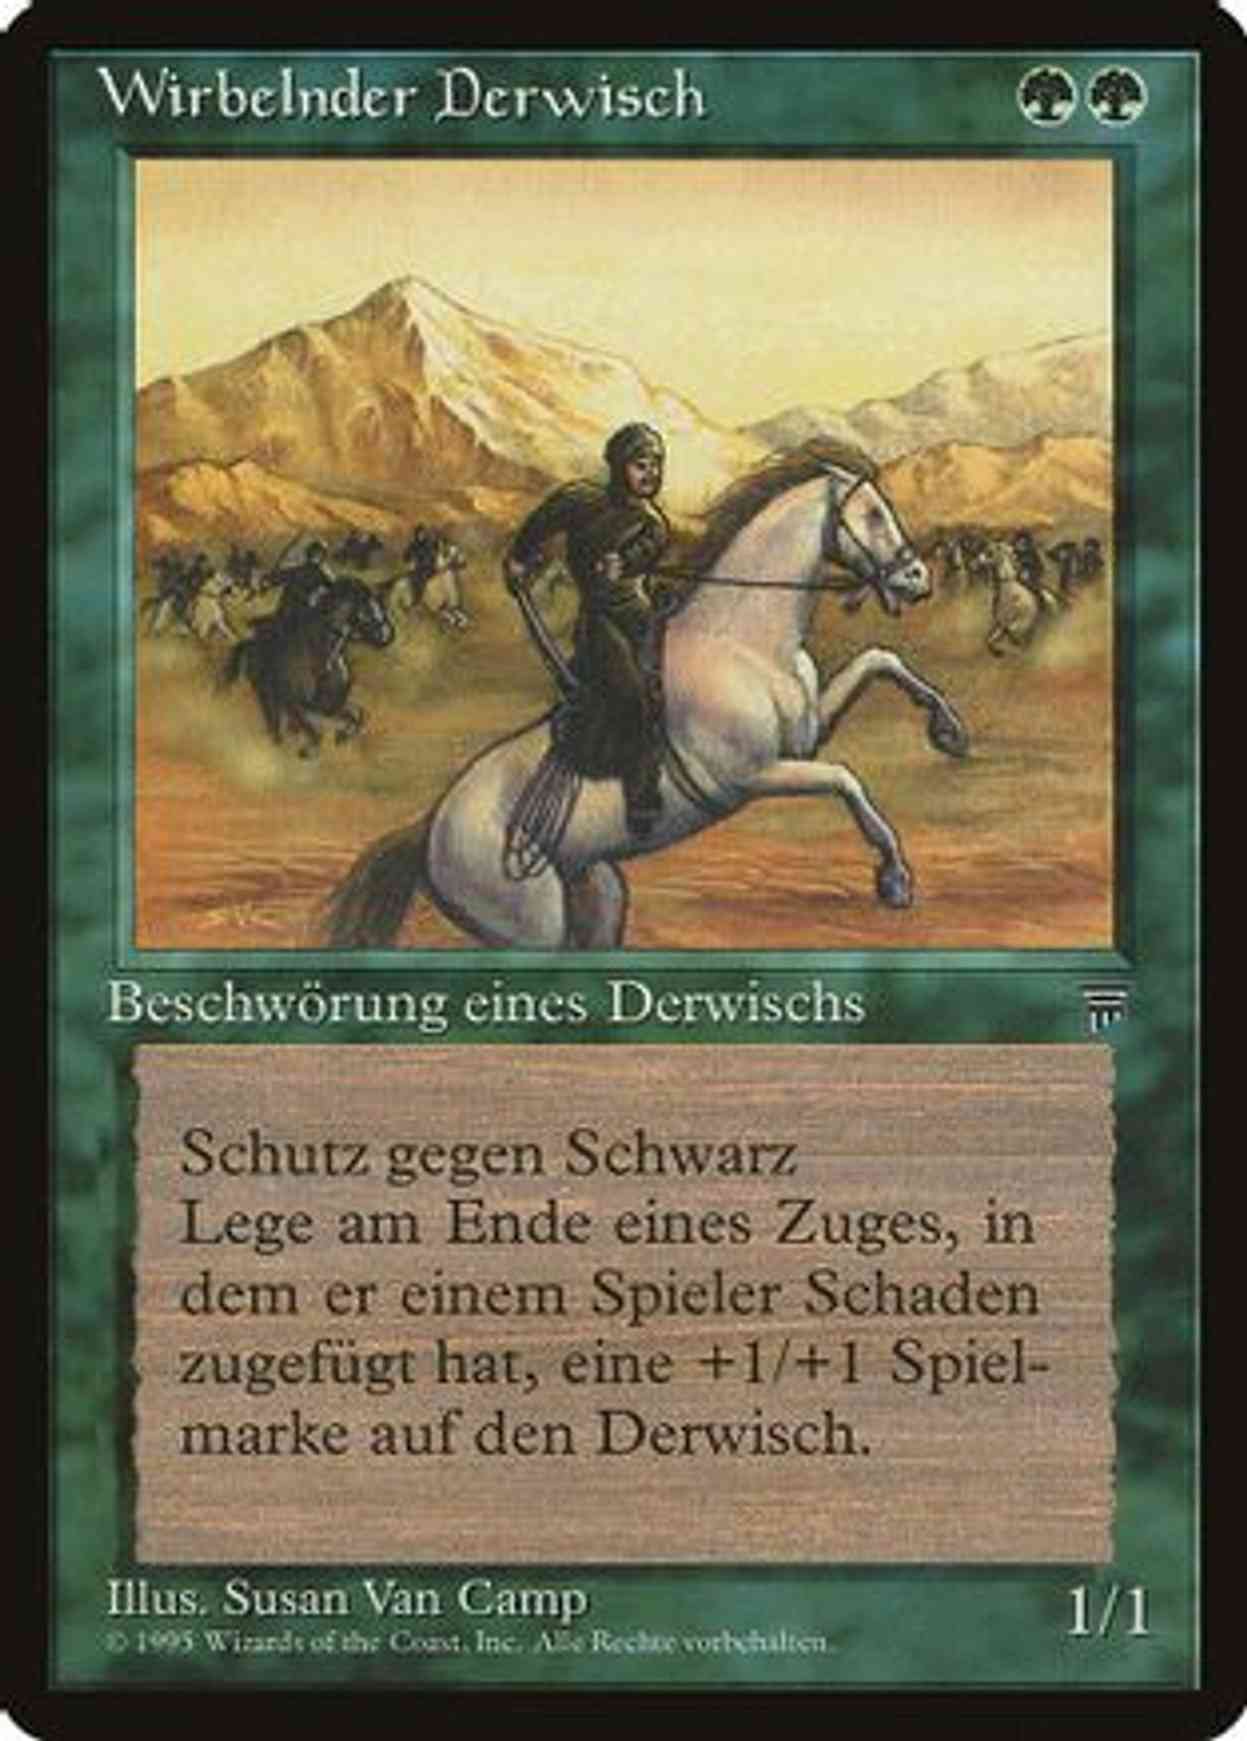 Whirling Dervish (German) - "Wirbelnder Derwisch" magic card front